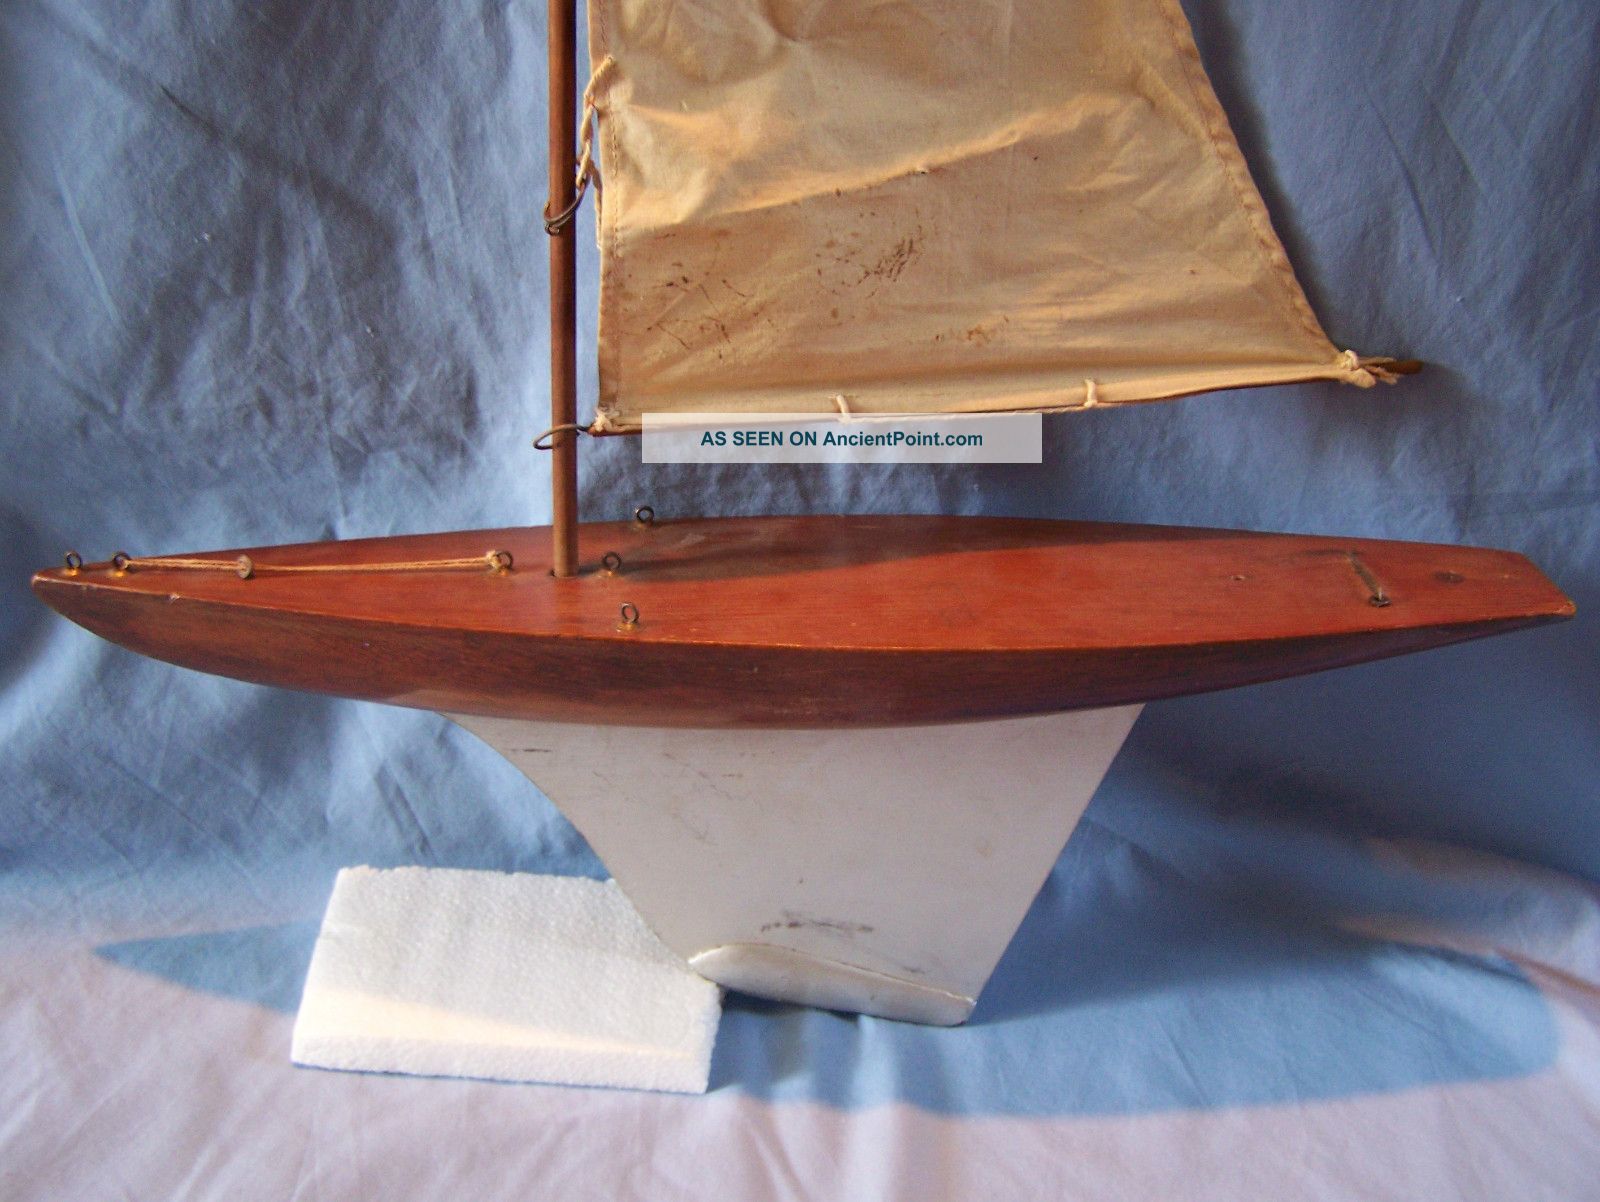 Wooden Sailboat Models